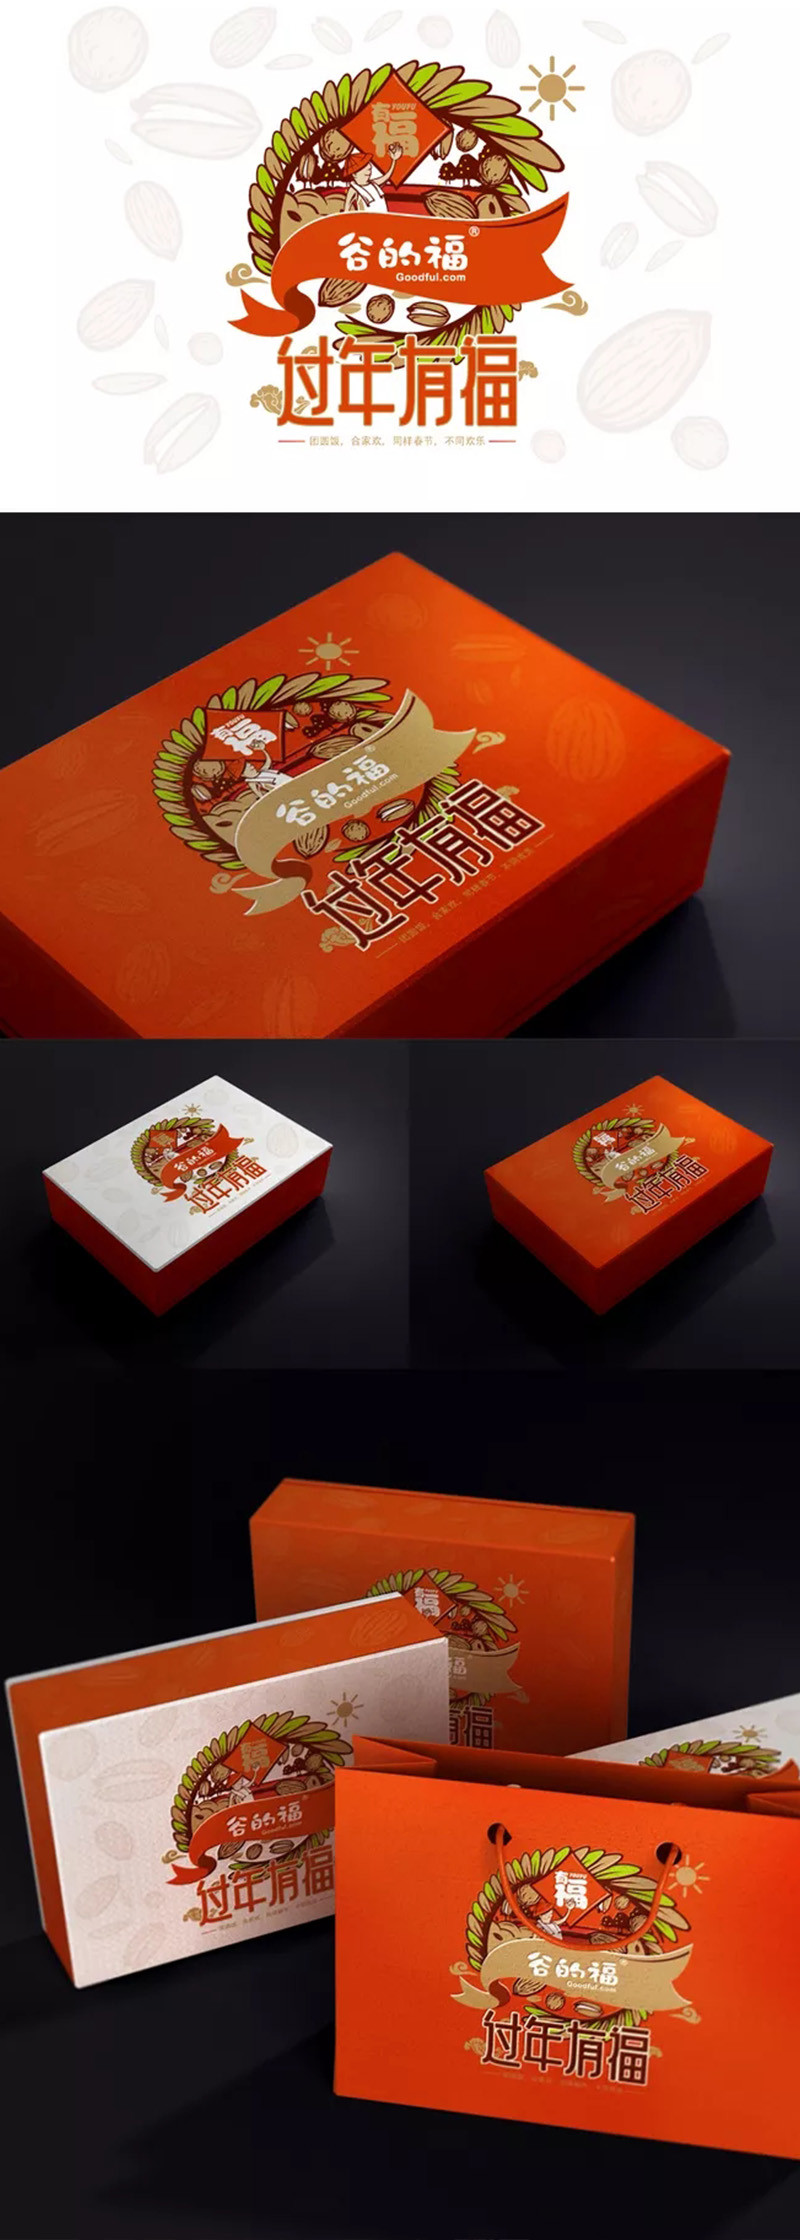 过年有福节日礼盒包装设计